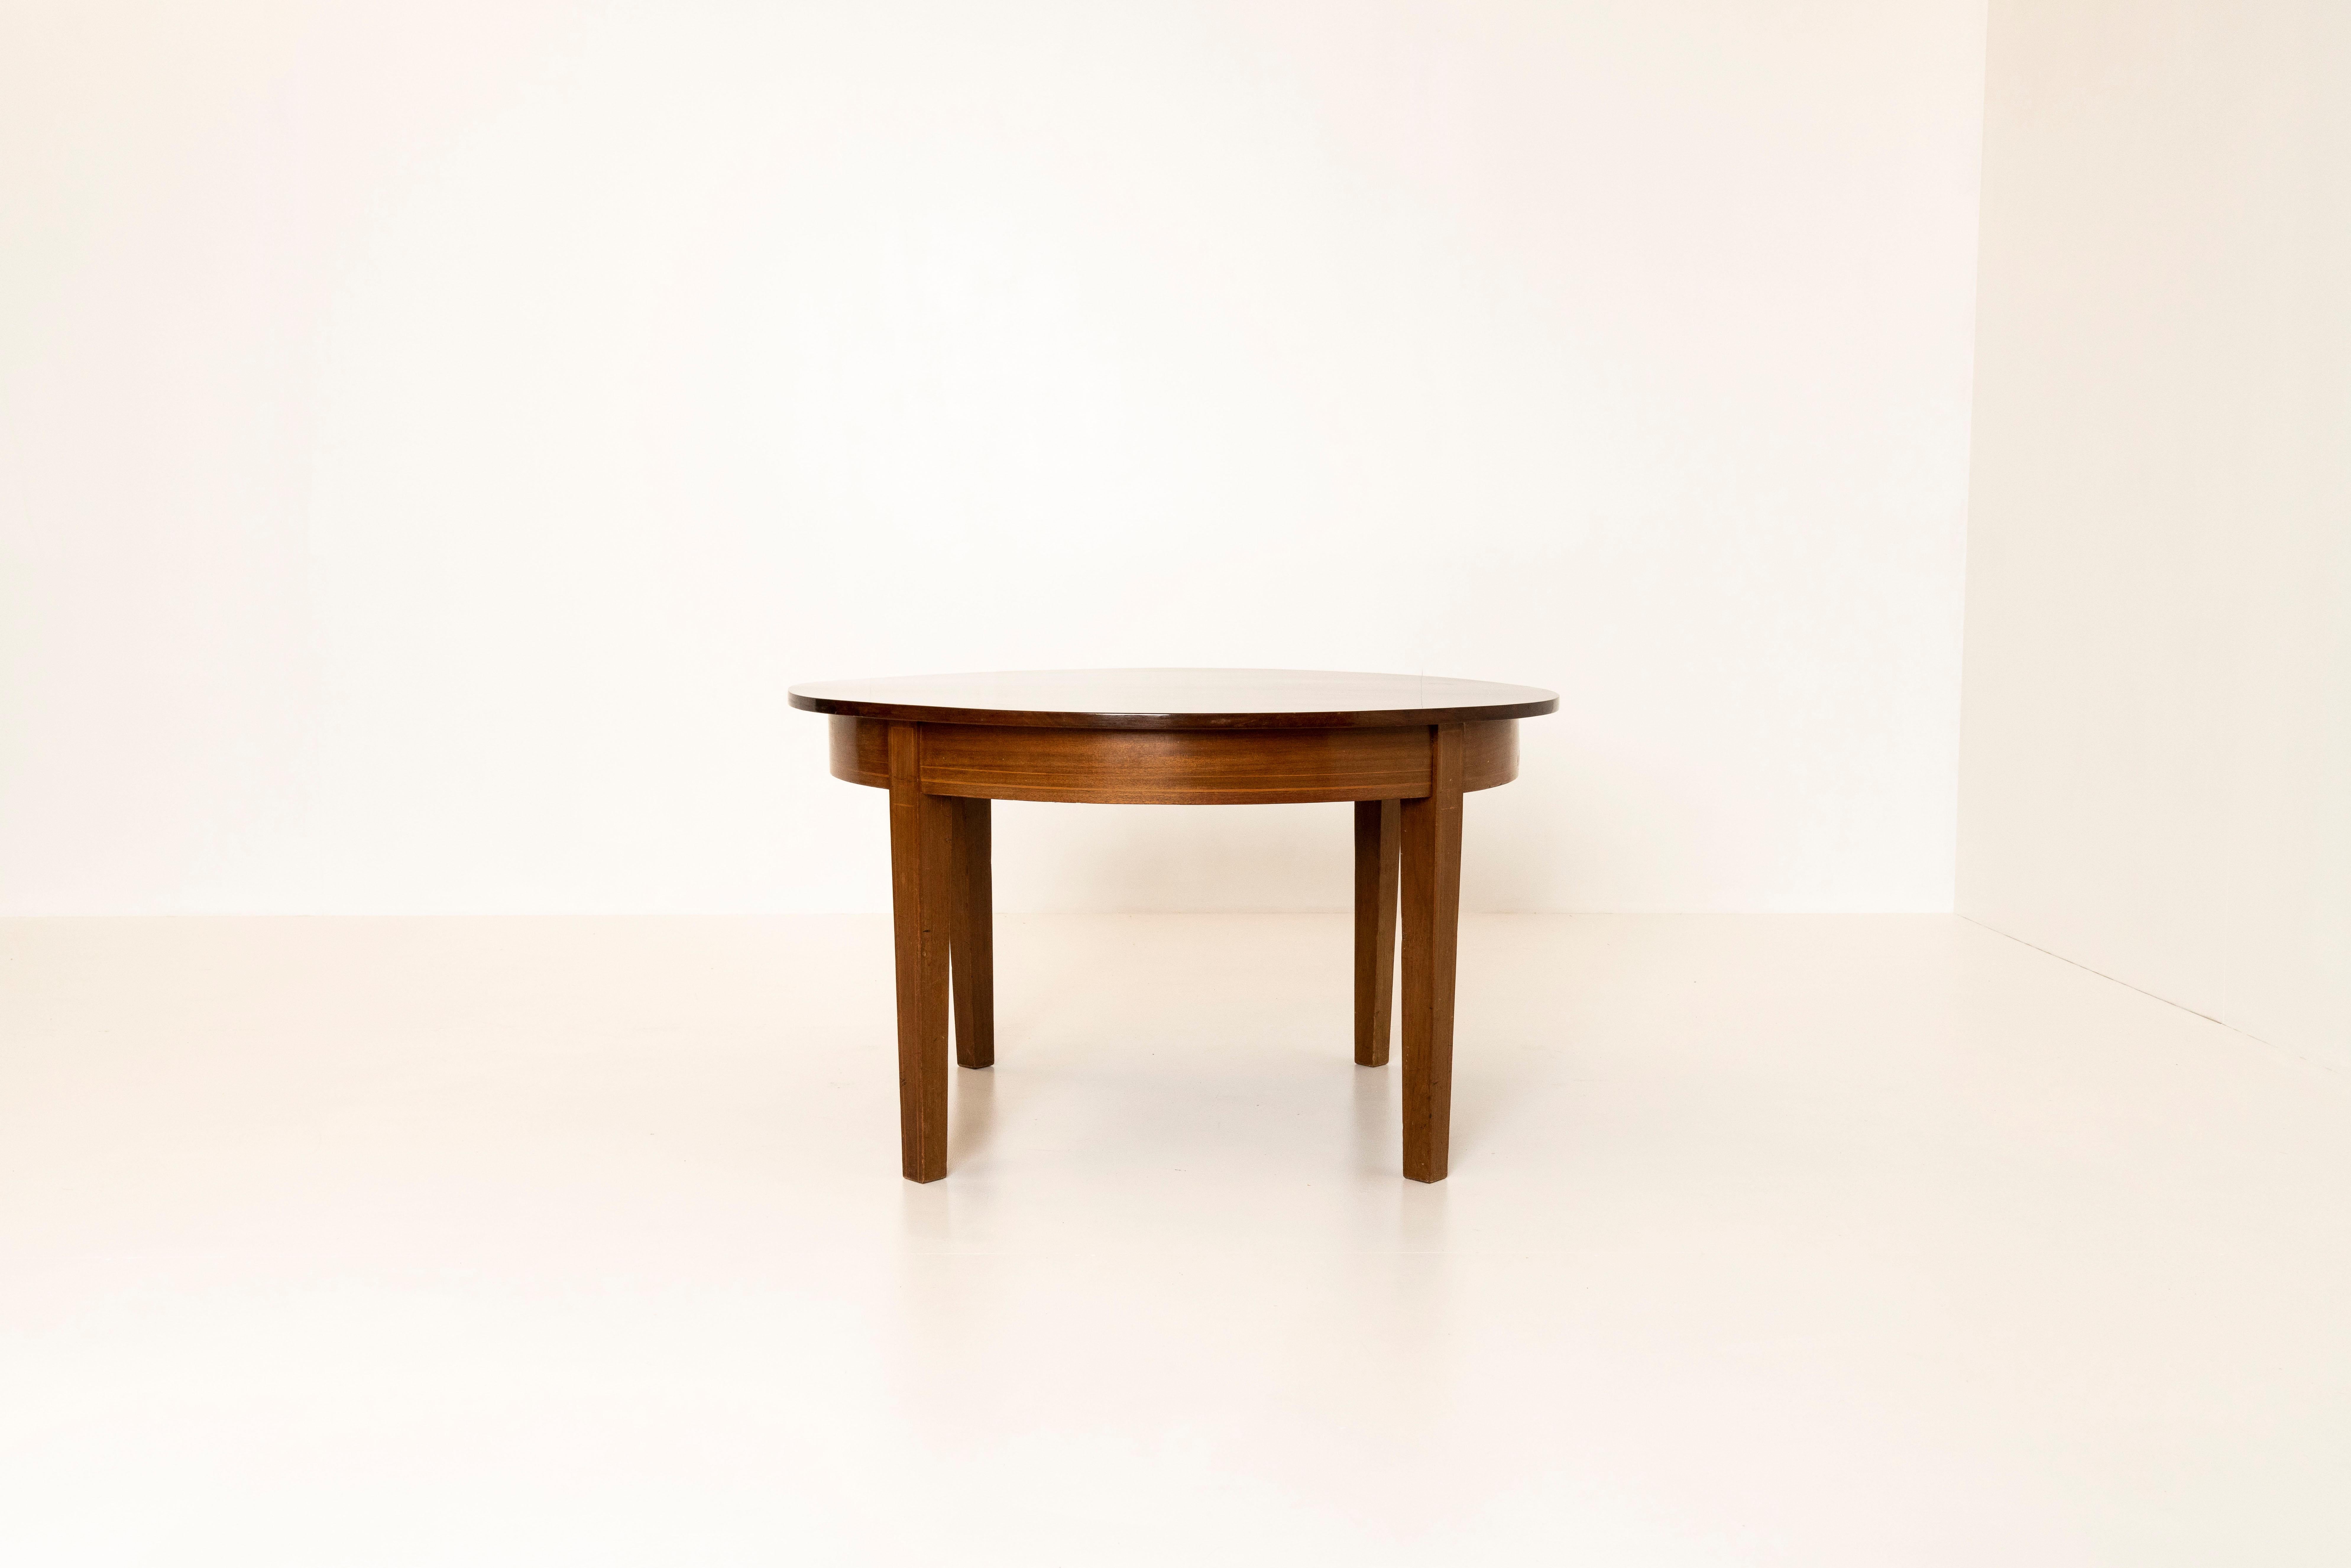 Charmante table basse ronde danoise en acajou, années 1960. Cette table a une doublure dorée sur la table et le plateau. Il présente un design minimal et fonctionnel et est en bon état, avec une usure normale due à son âge.